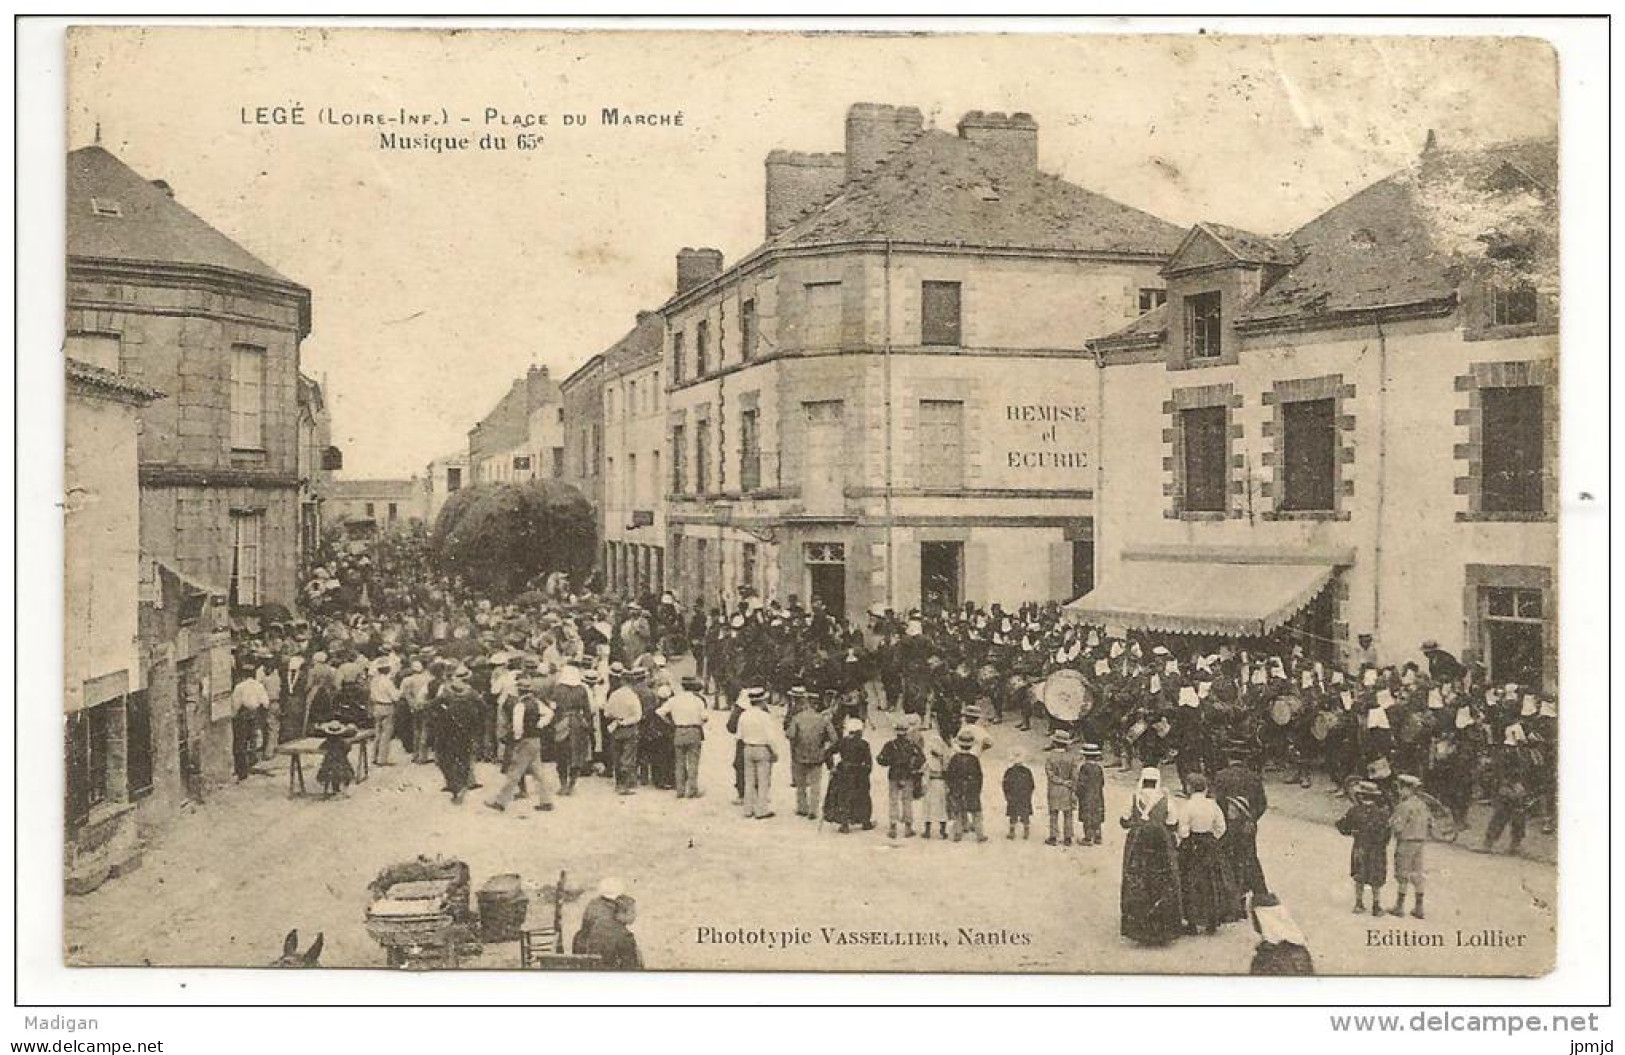 44 - LEGE - Place Du Marché - Musique Du 65e - Phototypie Vassellier - Ed Lollier - Tampon XIe Corps D'Armée 1915 - état - Legé